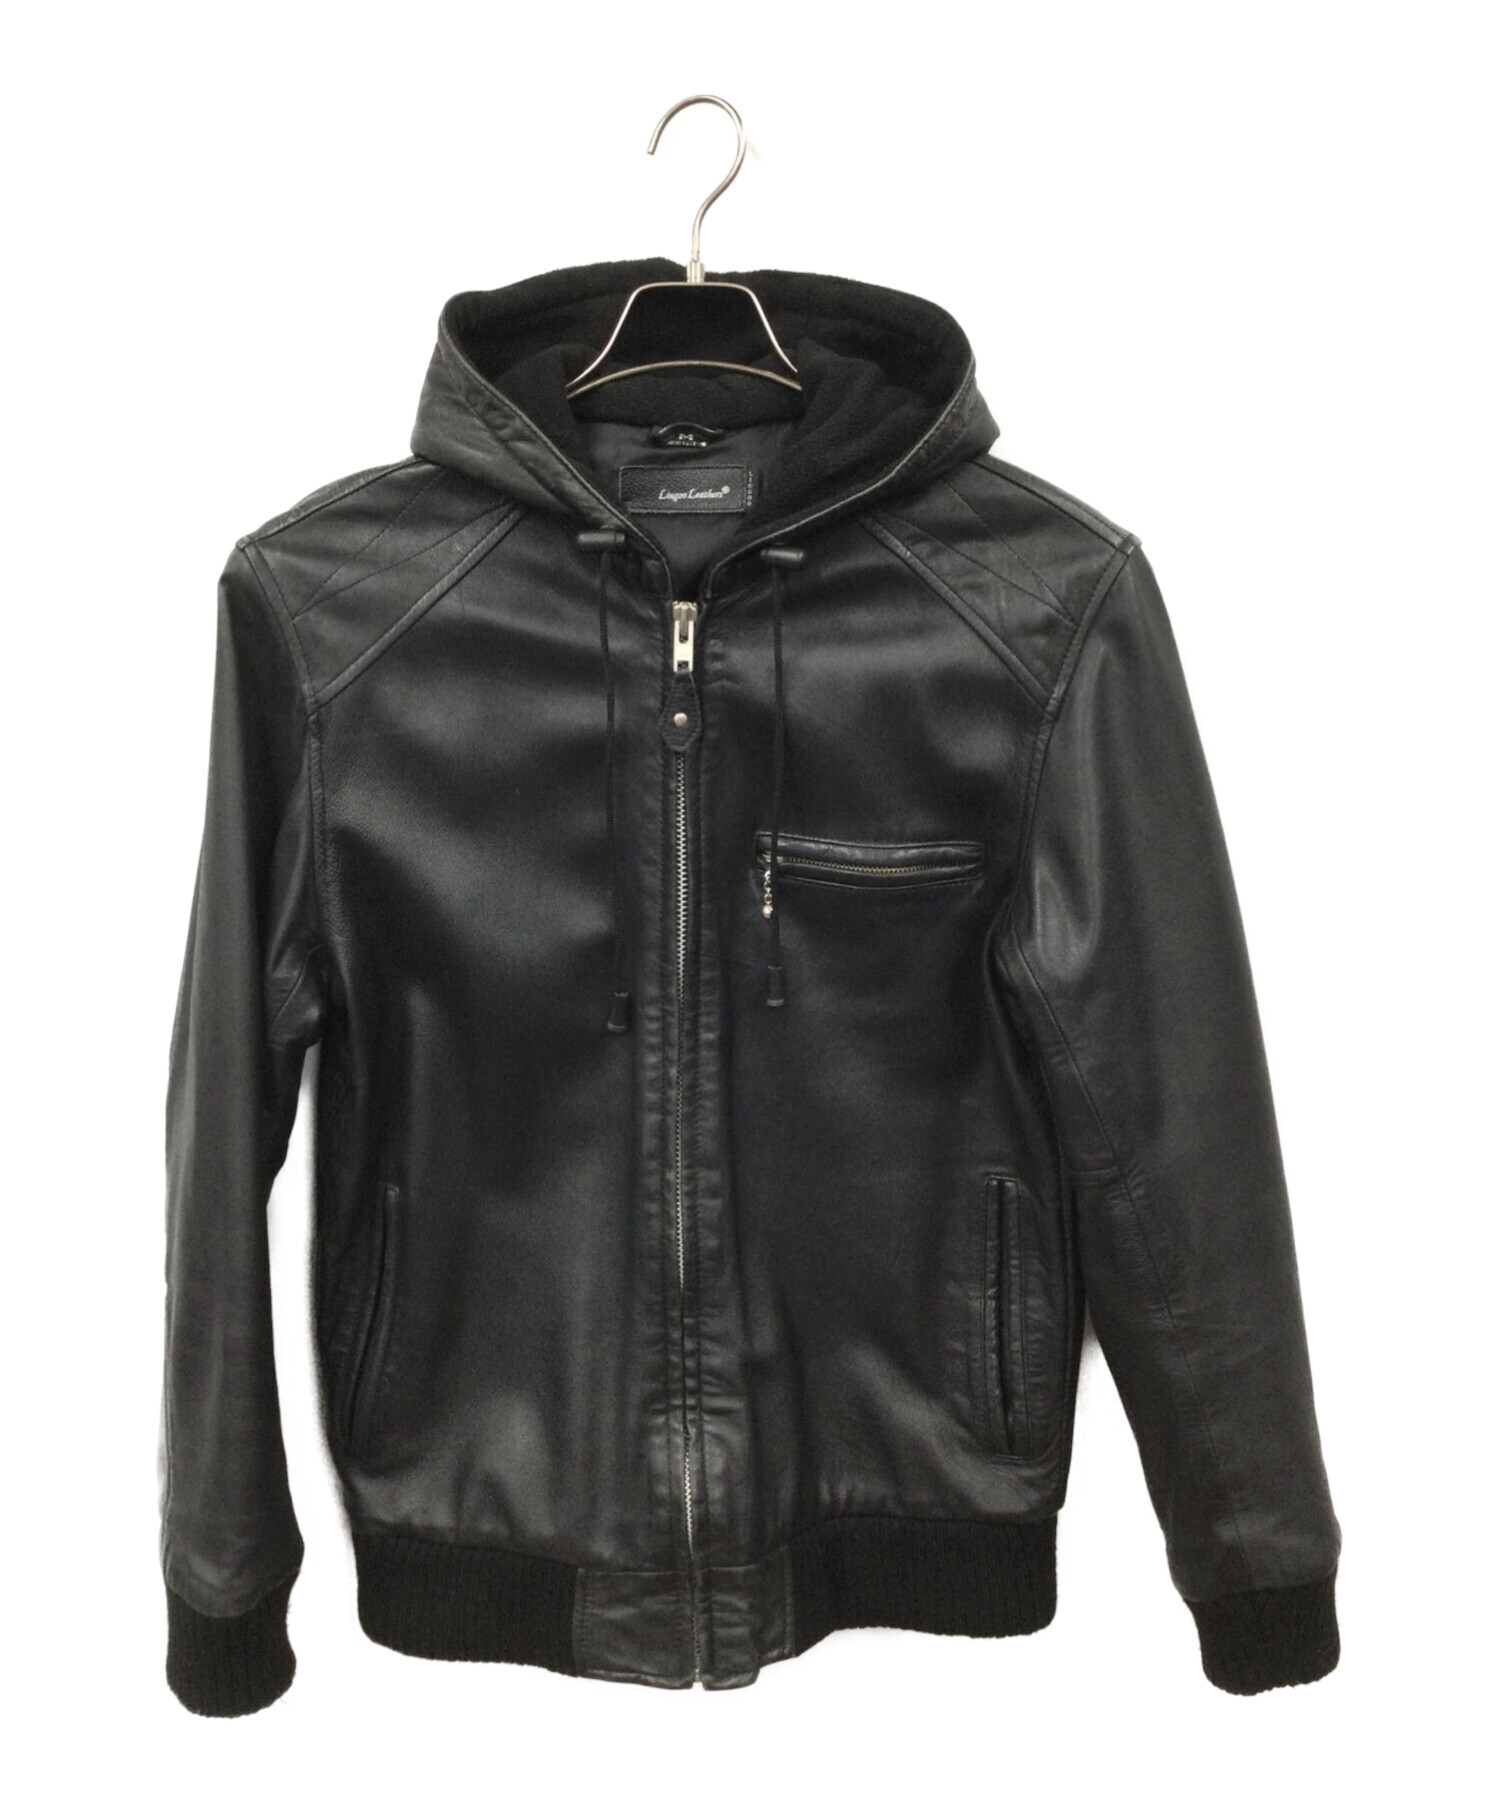 Liugoo Leathers real leather hoodie jkt購入希望の方はコメント下さい